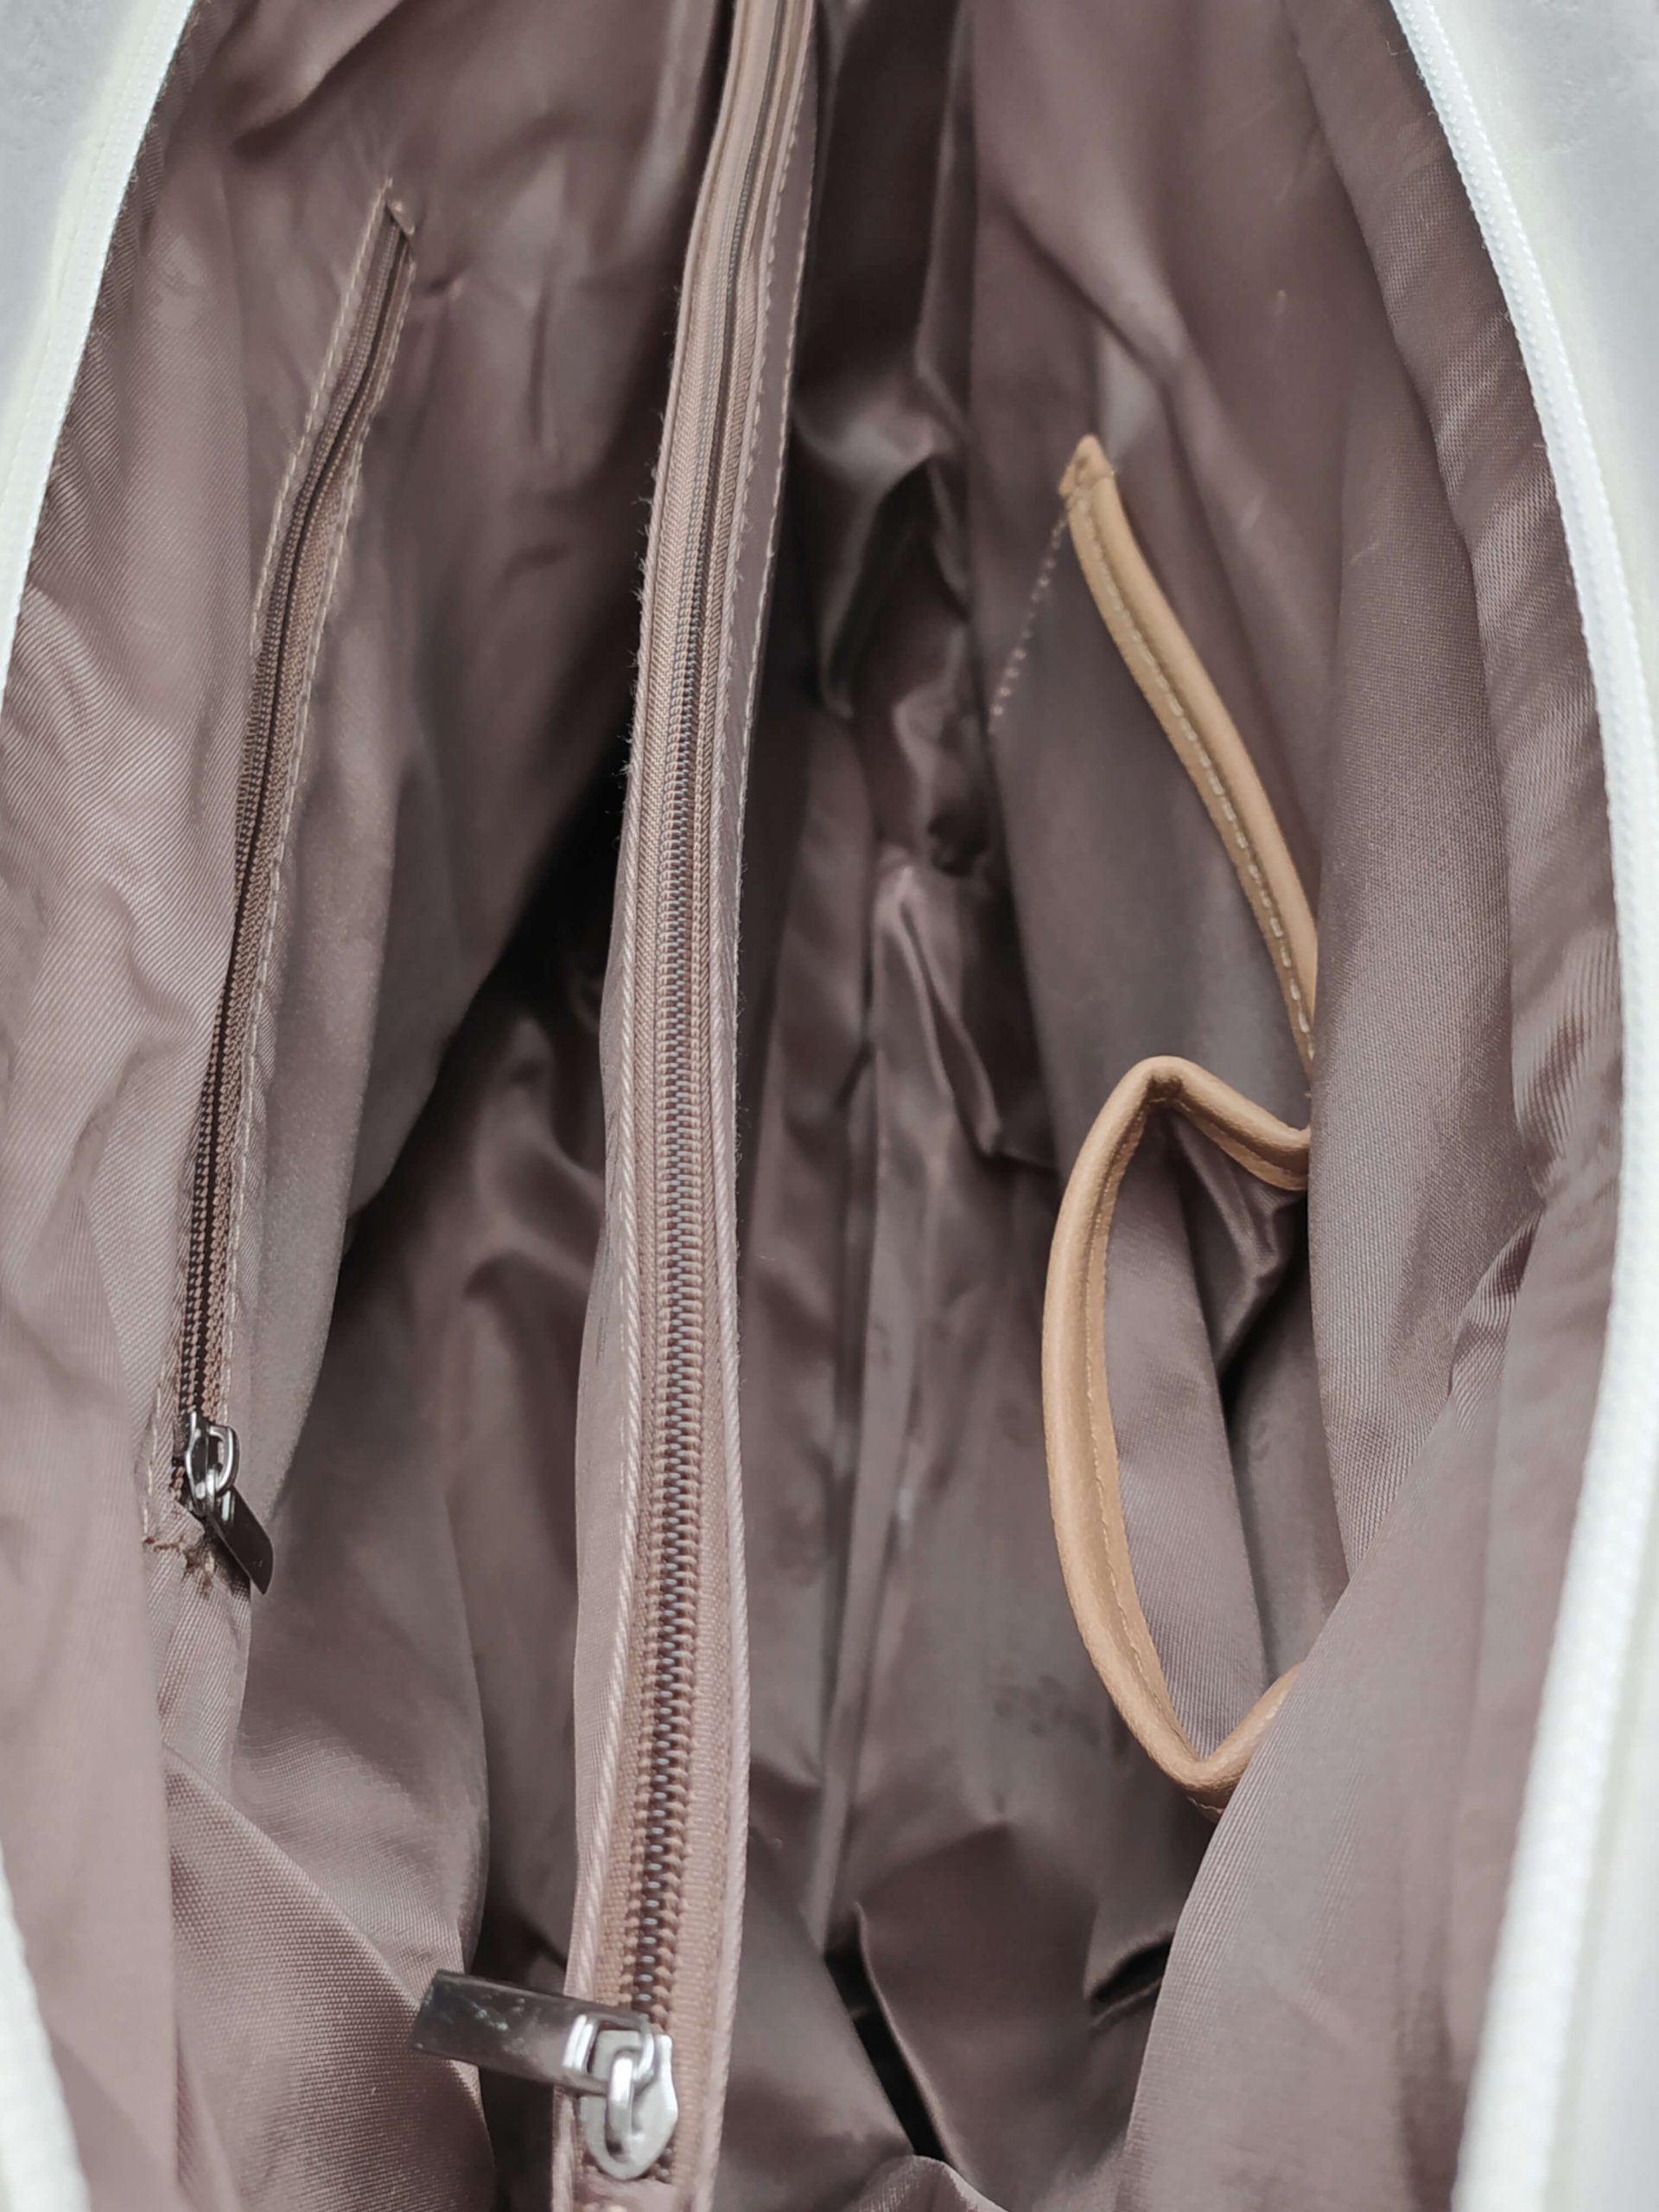 Bílá kabelka přes rameno s šikmými vzory, Tapple, H190030, vnitřní uspořádání dámské kabelky přes rameno